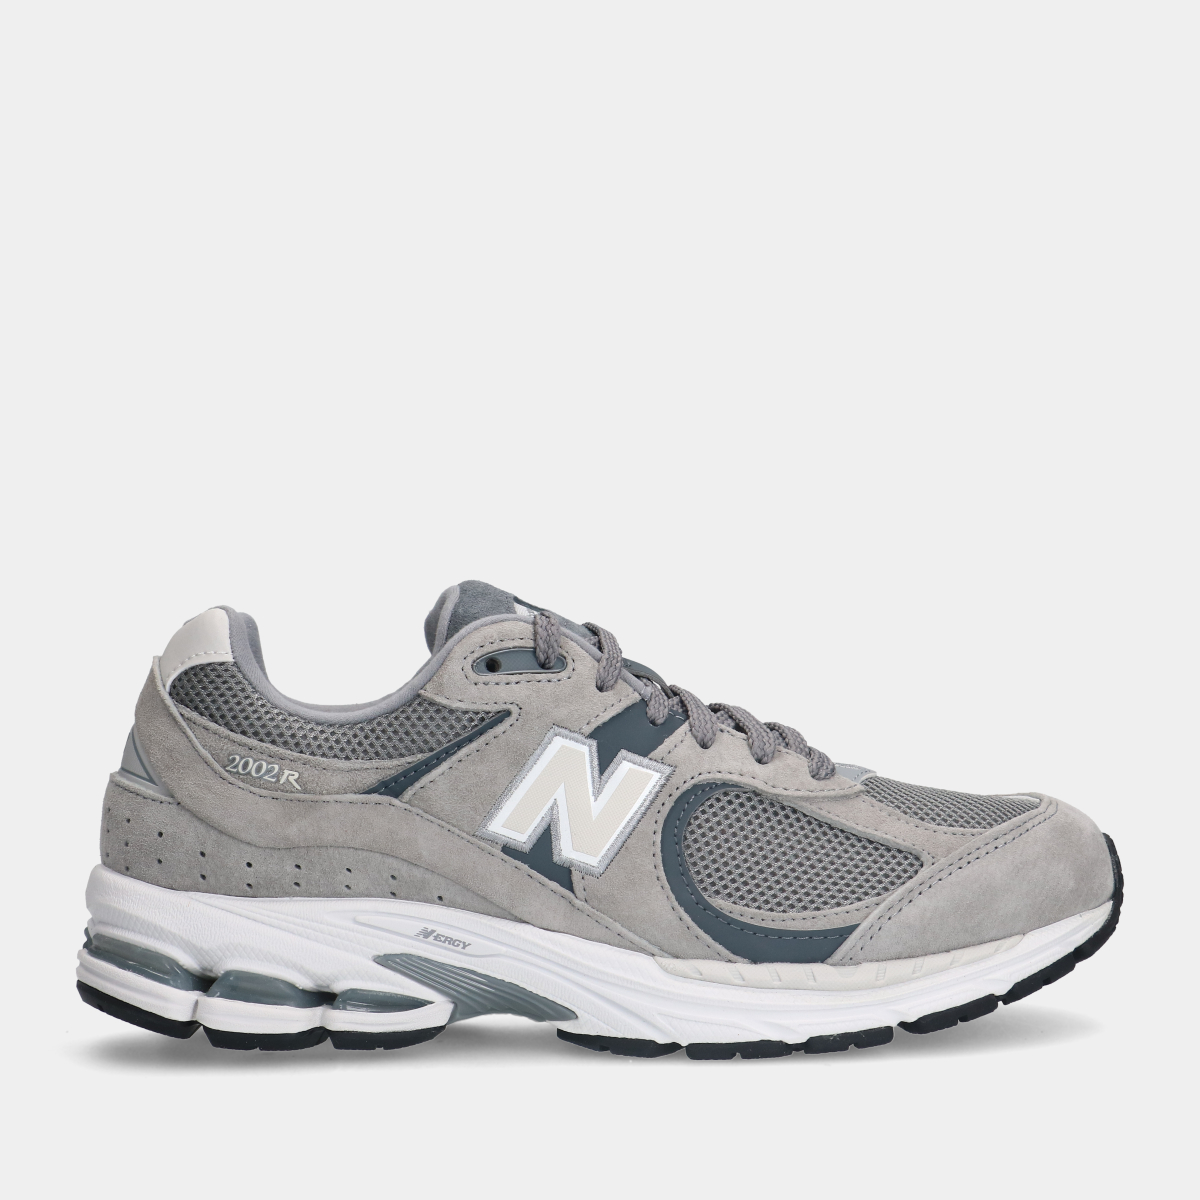 New Balance 2002R Grey heren sneakers